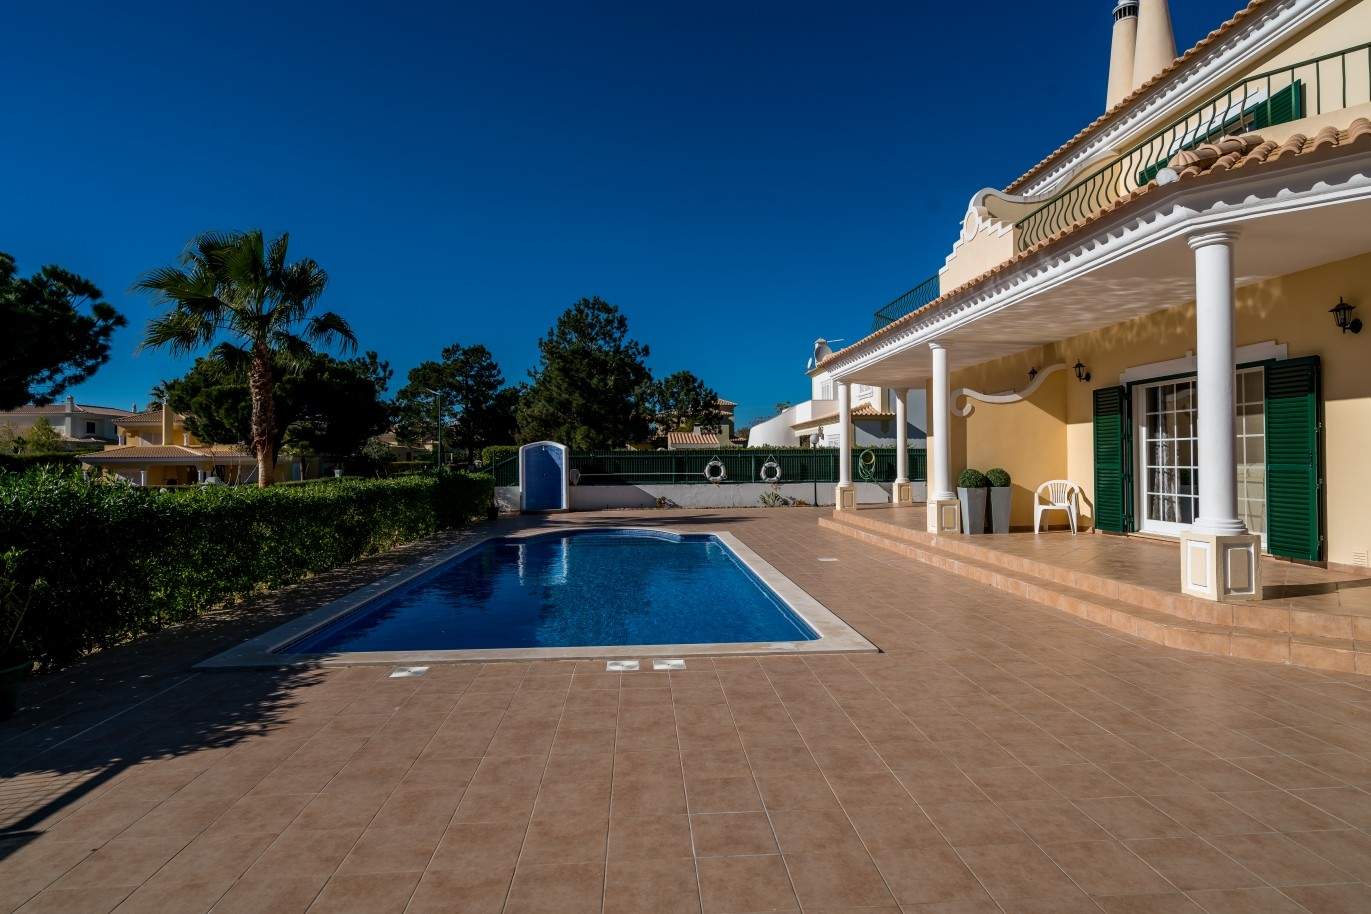 Vivienda en venta con piscina, cerca golf, Vilamoura, Algarve,Portugal_73619